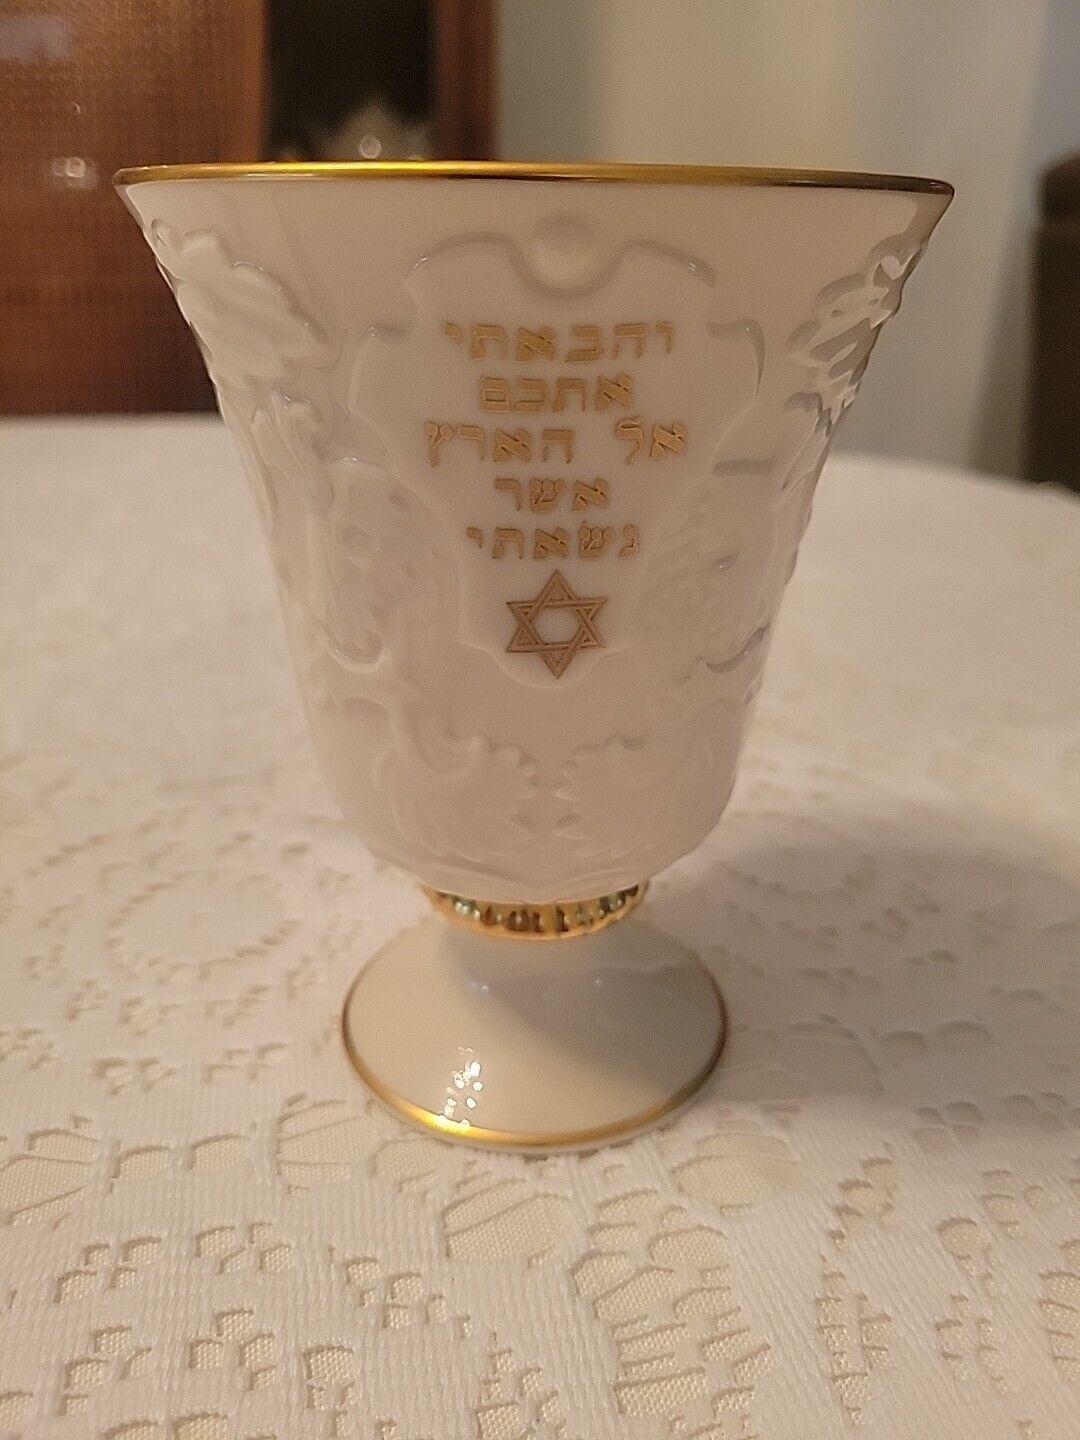 VINTAGE LENOX JEWISH HEBREW GOLD TRIM ELIJAH’S CUP JUDAISM JUDAICA